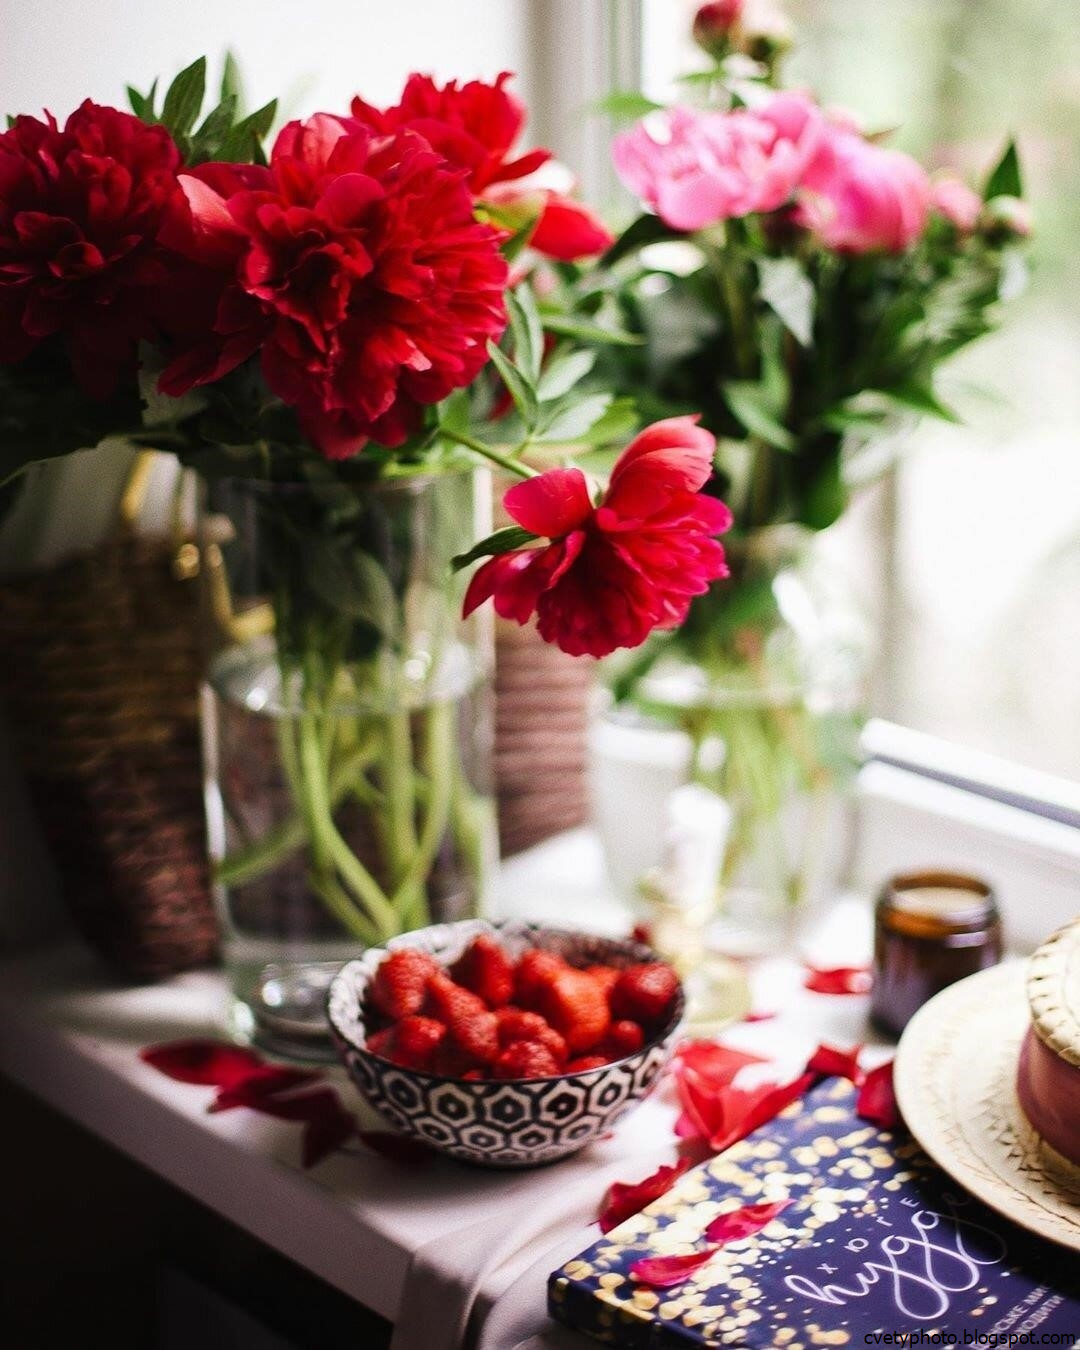 Картинка с цветами на столе. Цветы на столе. Цветы на кухонном столе. Букет цветов на столе. Столик для цветка.